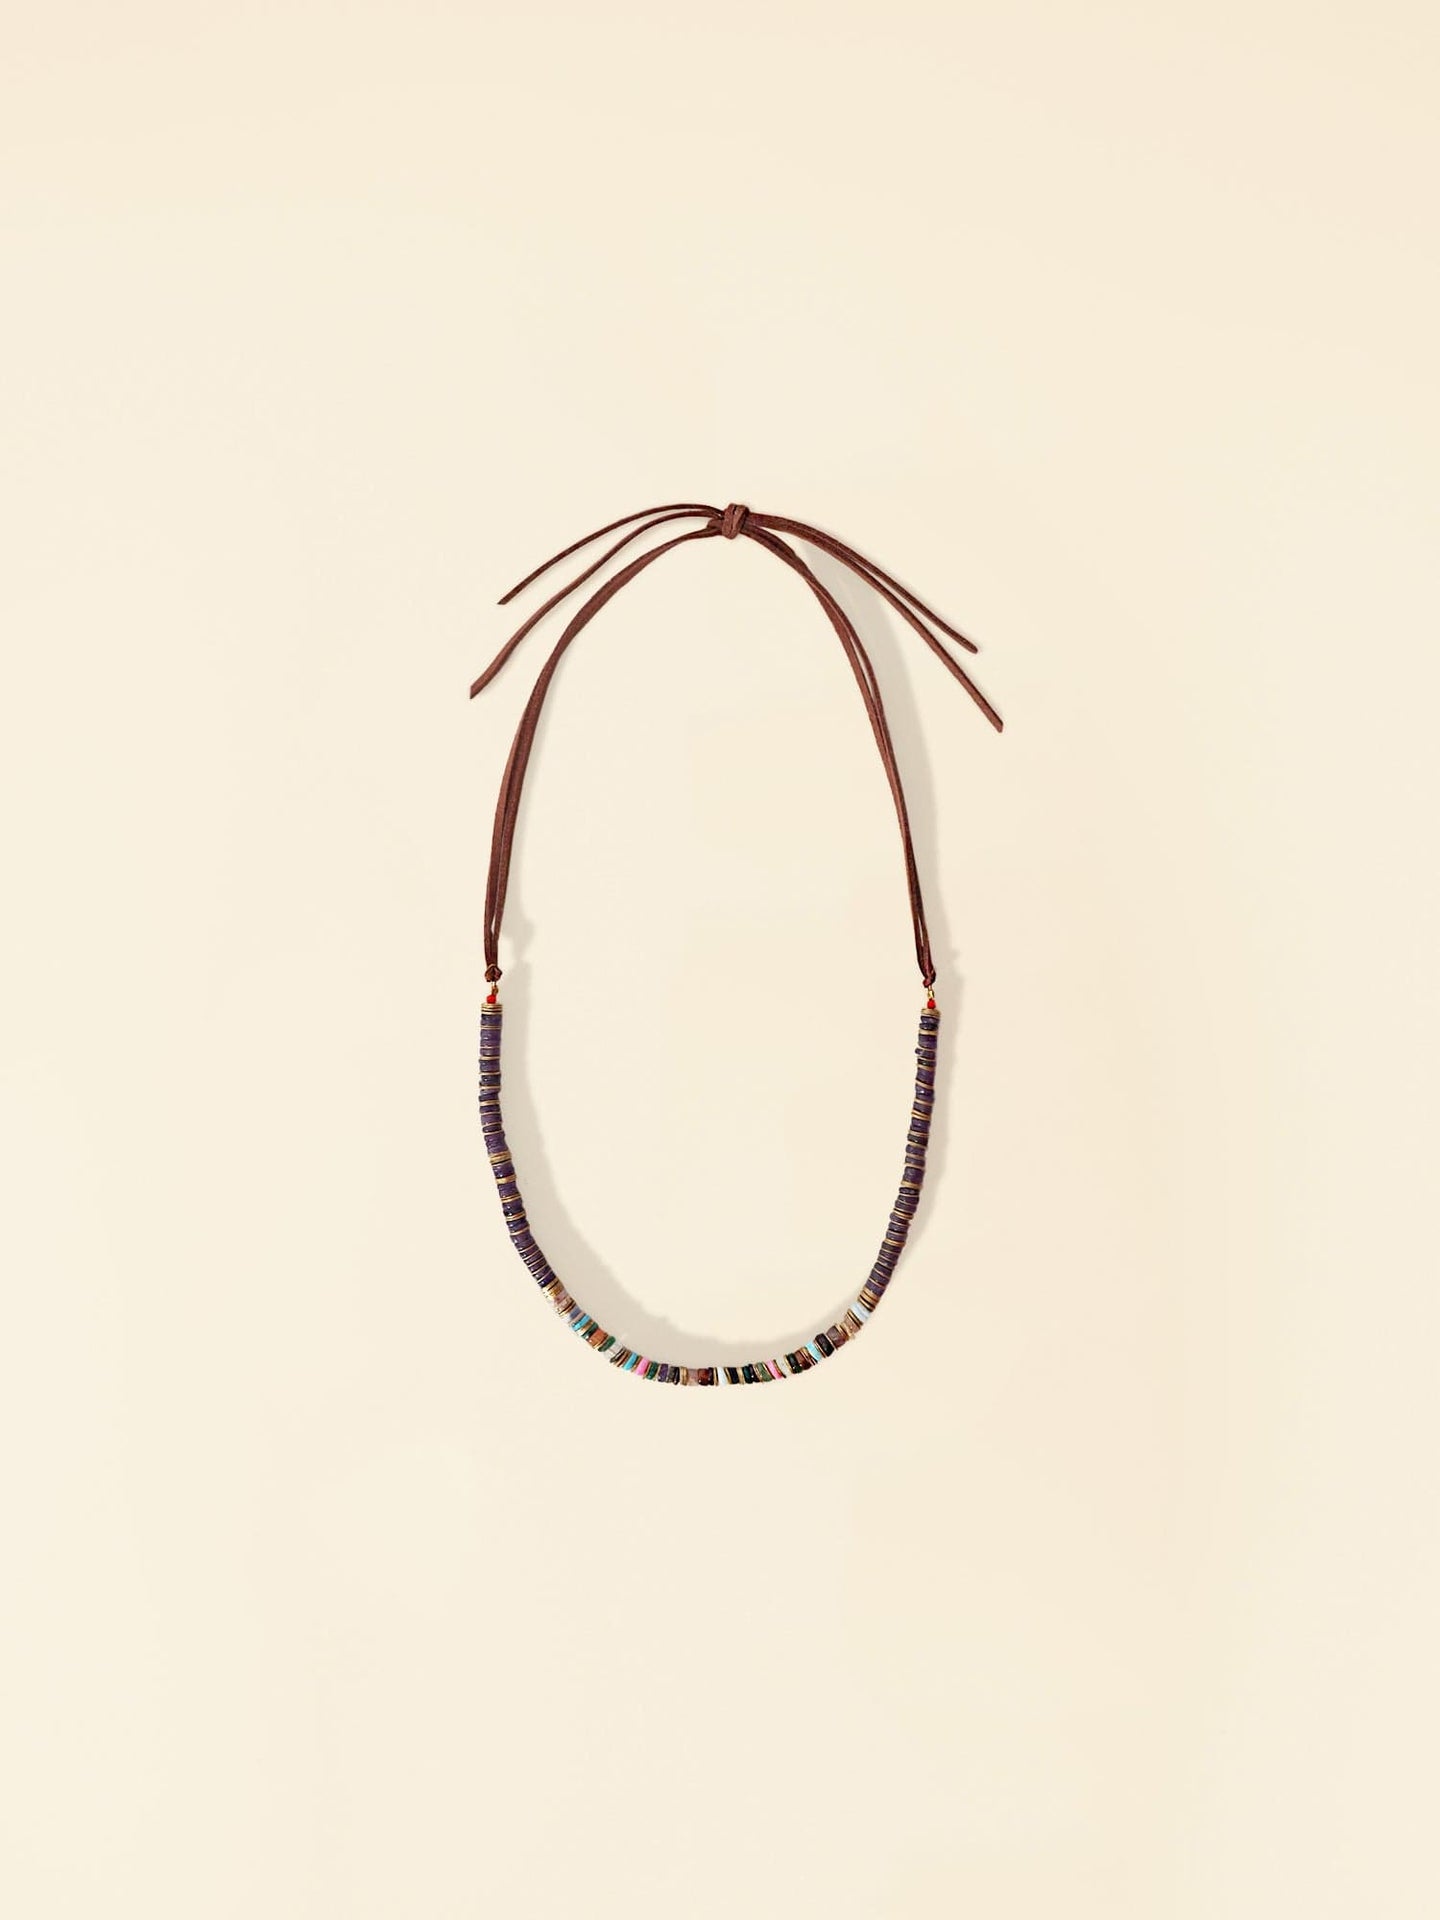 Xirena Necklace One Size / Indigo Brown Indigo Brown Solange Stone Necklace X0ELM001-OS-InBr